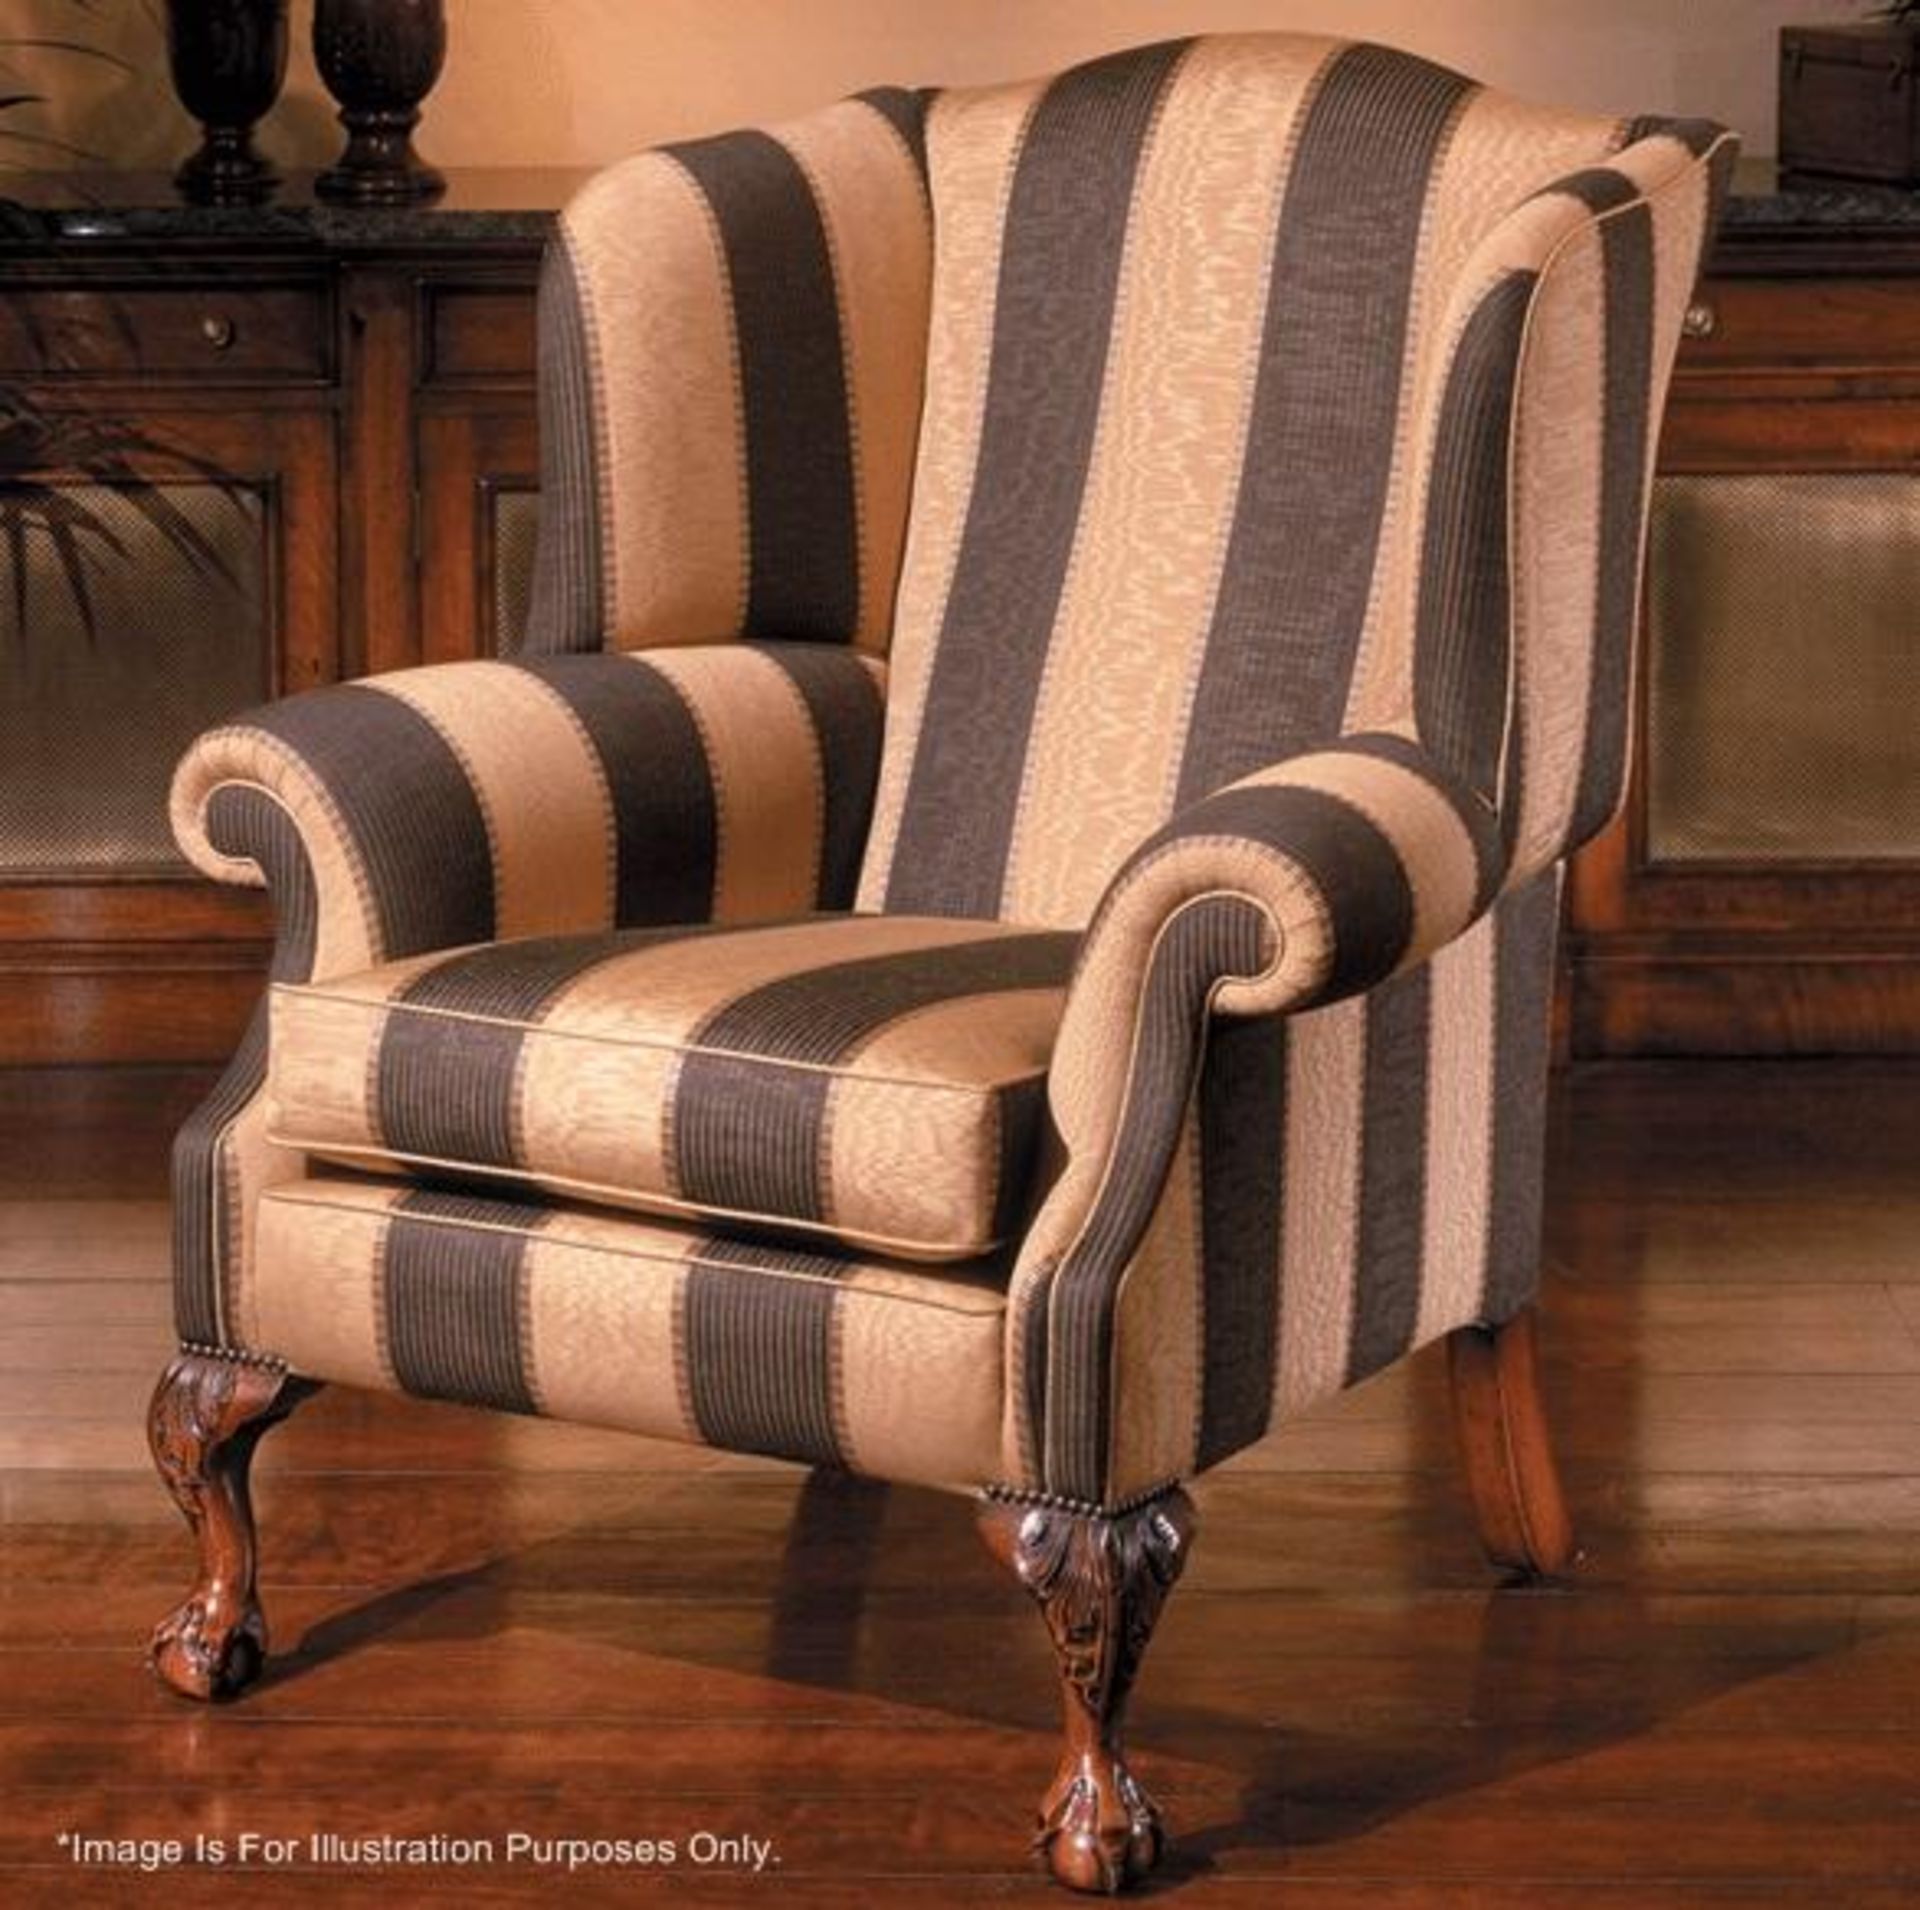 1 x DURESTA Devonshire "R340" Seat Cushion (Foam Interior only) - Ref: 5033248 - CL087 - Location: